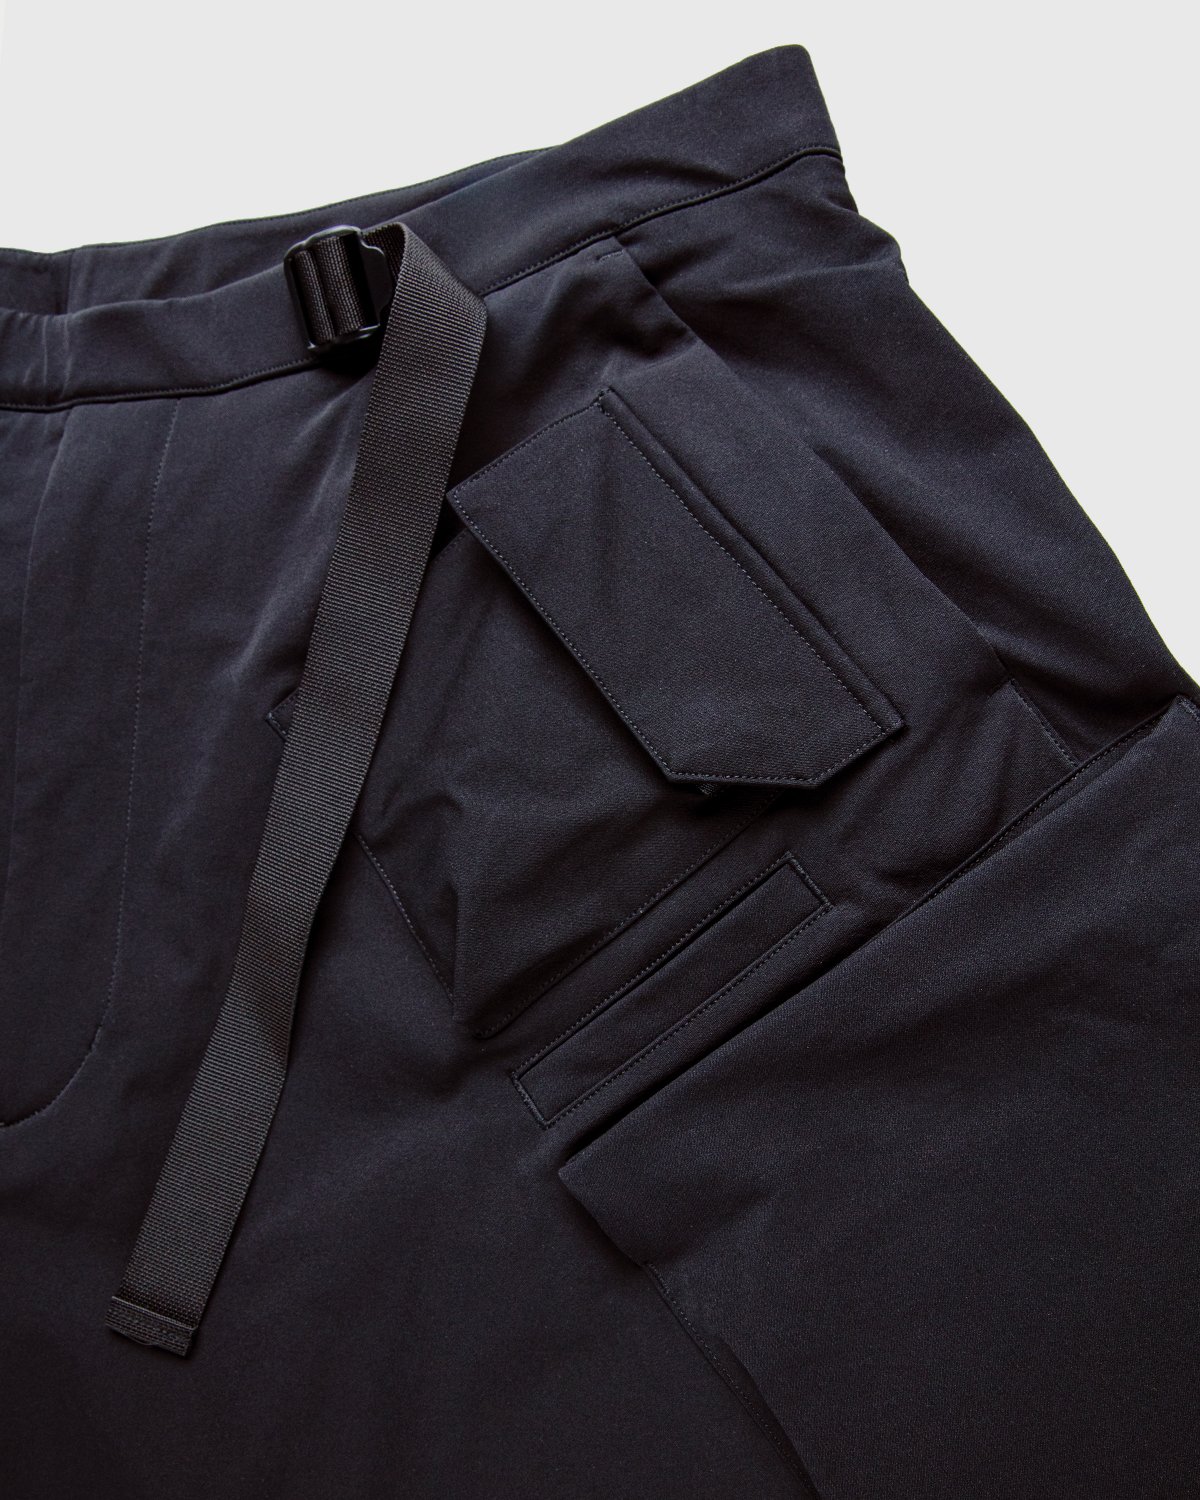 ACRONYM - P30A-DS Pants Black - Clothing - Black - Image 5